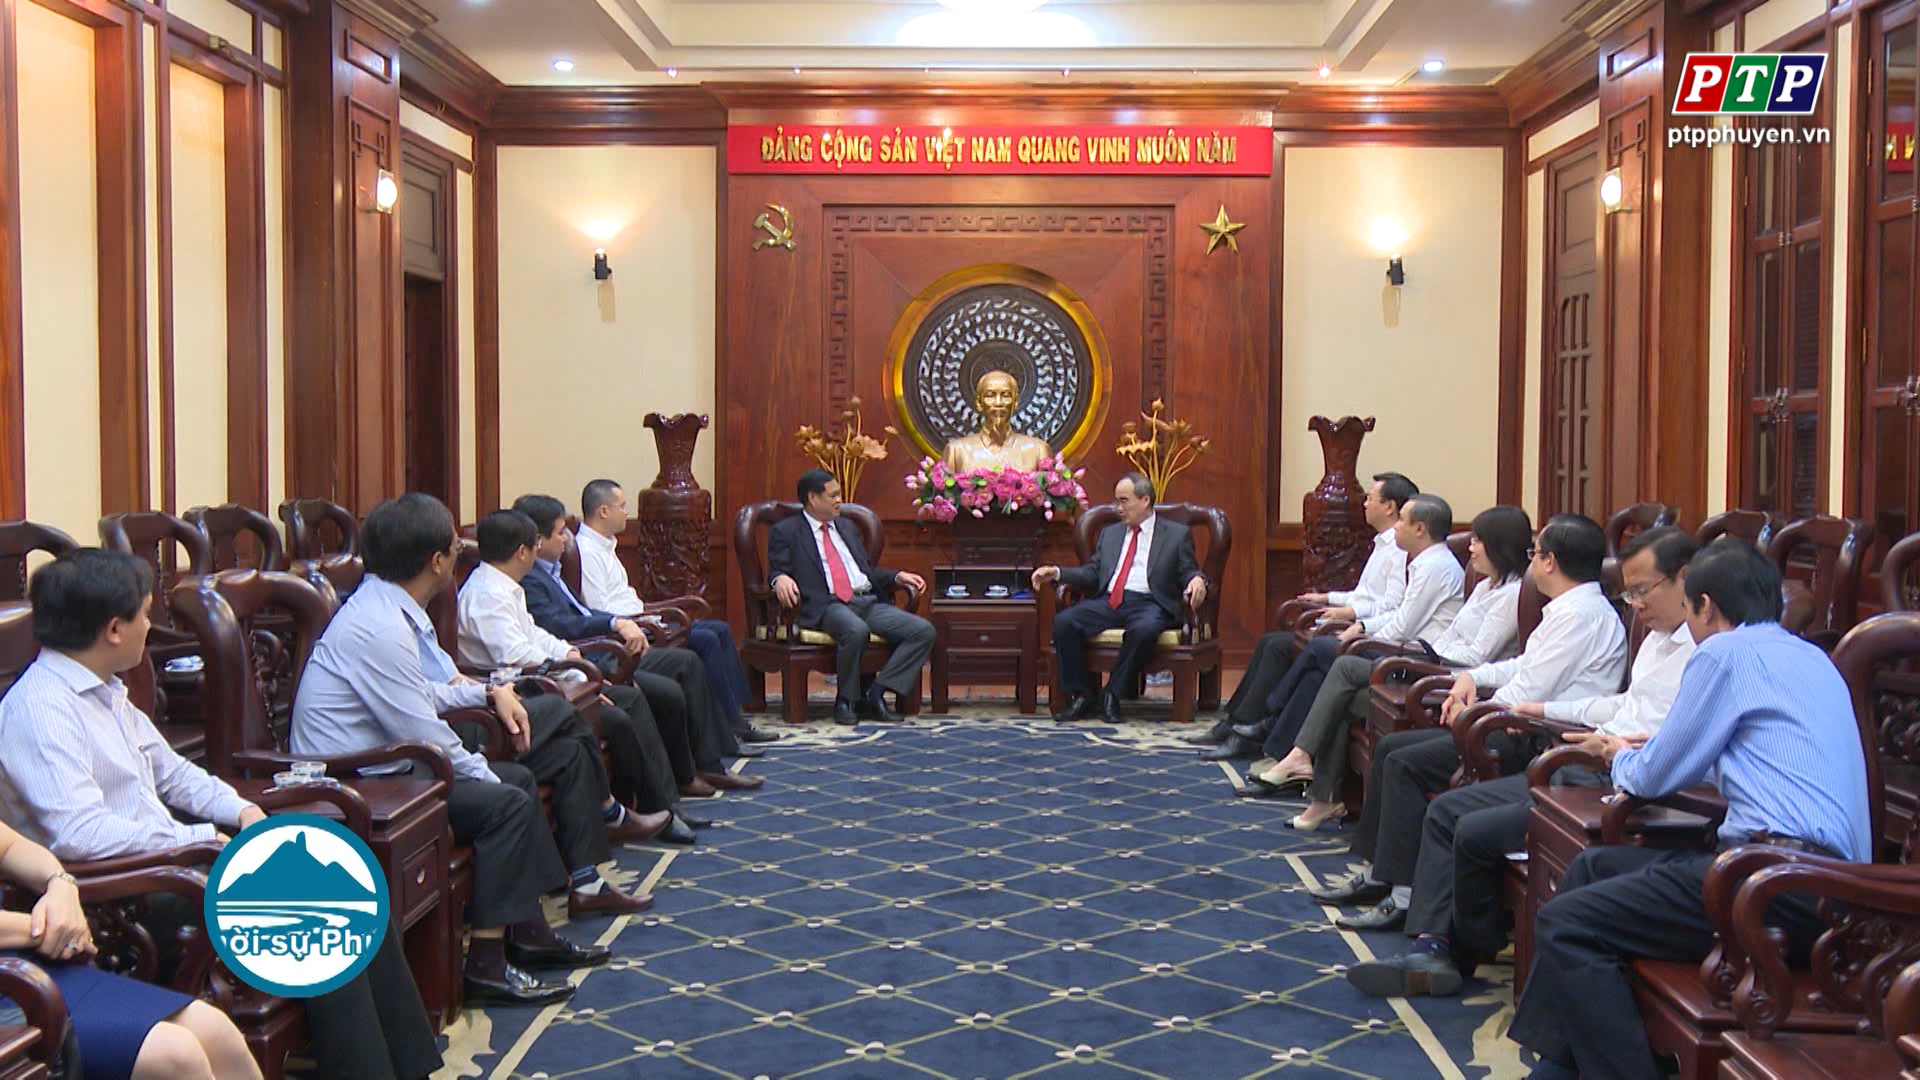 Lãnh đạo tỉnh Phú Yên thăm và làm việc với Thành ủy TP Hồ Chí Minh